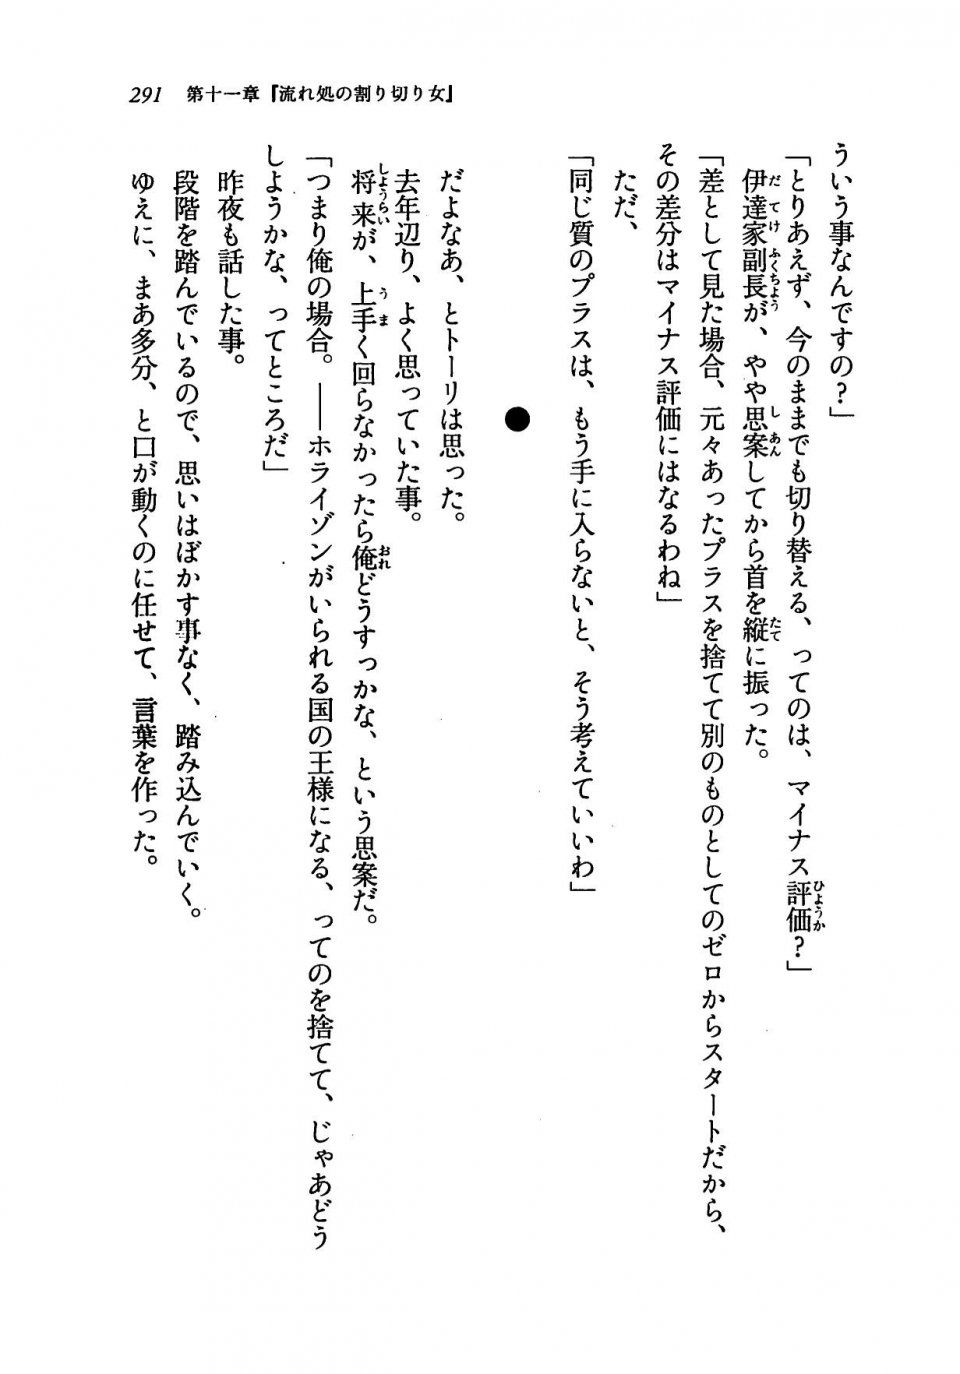 Kyoukai Senjou no Horizon LN Vol 19(8A) - Photo #291